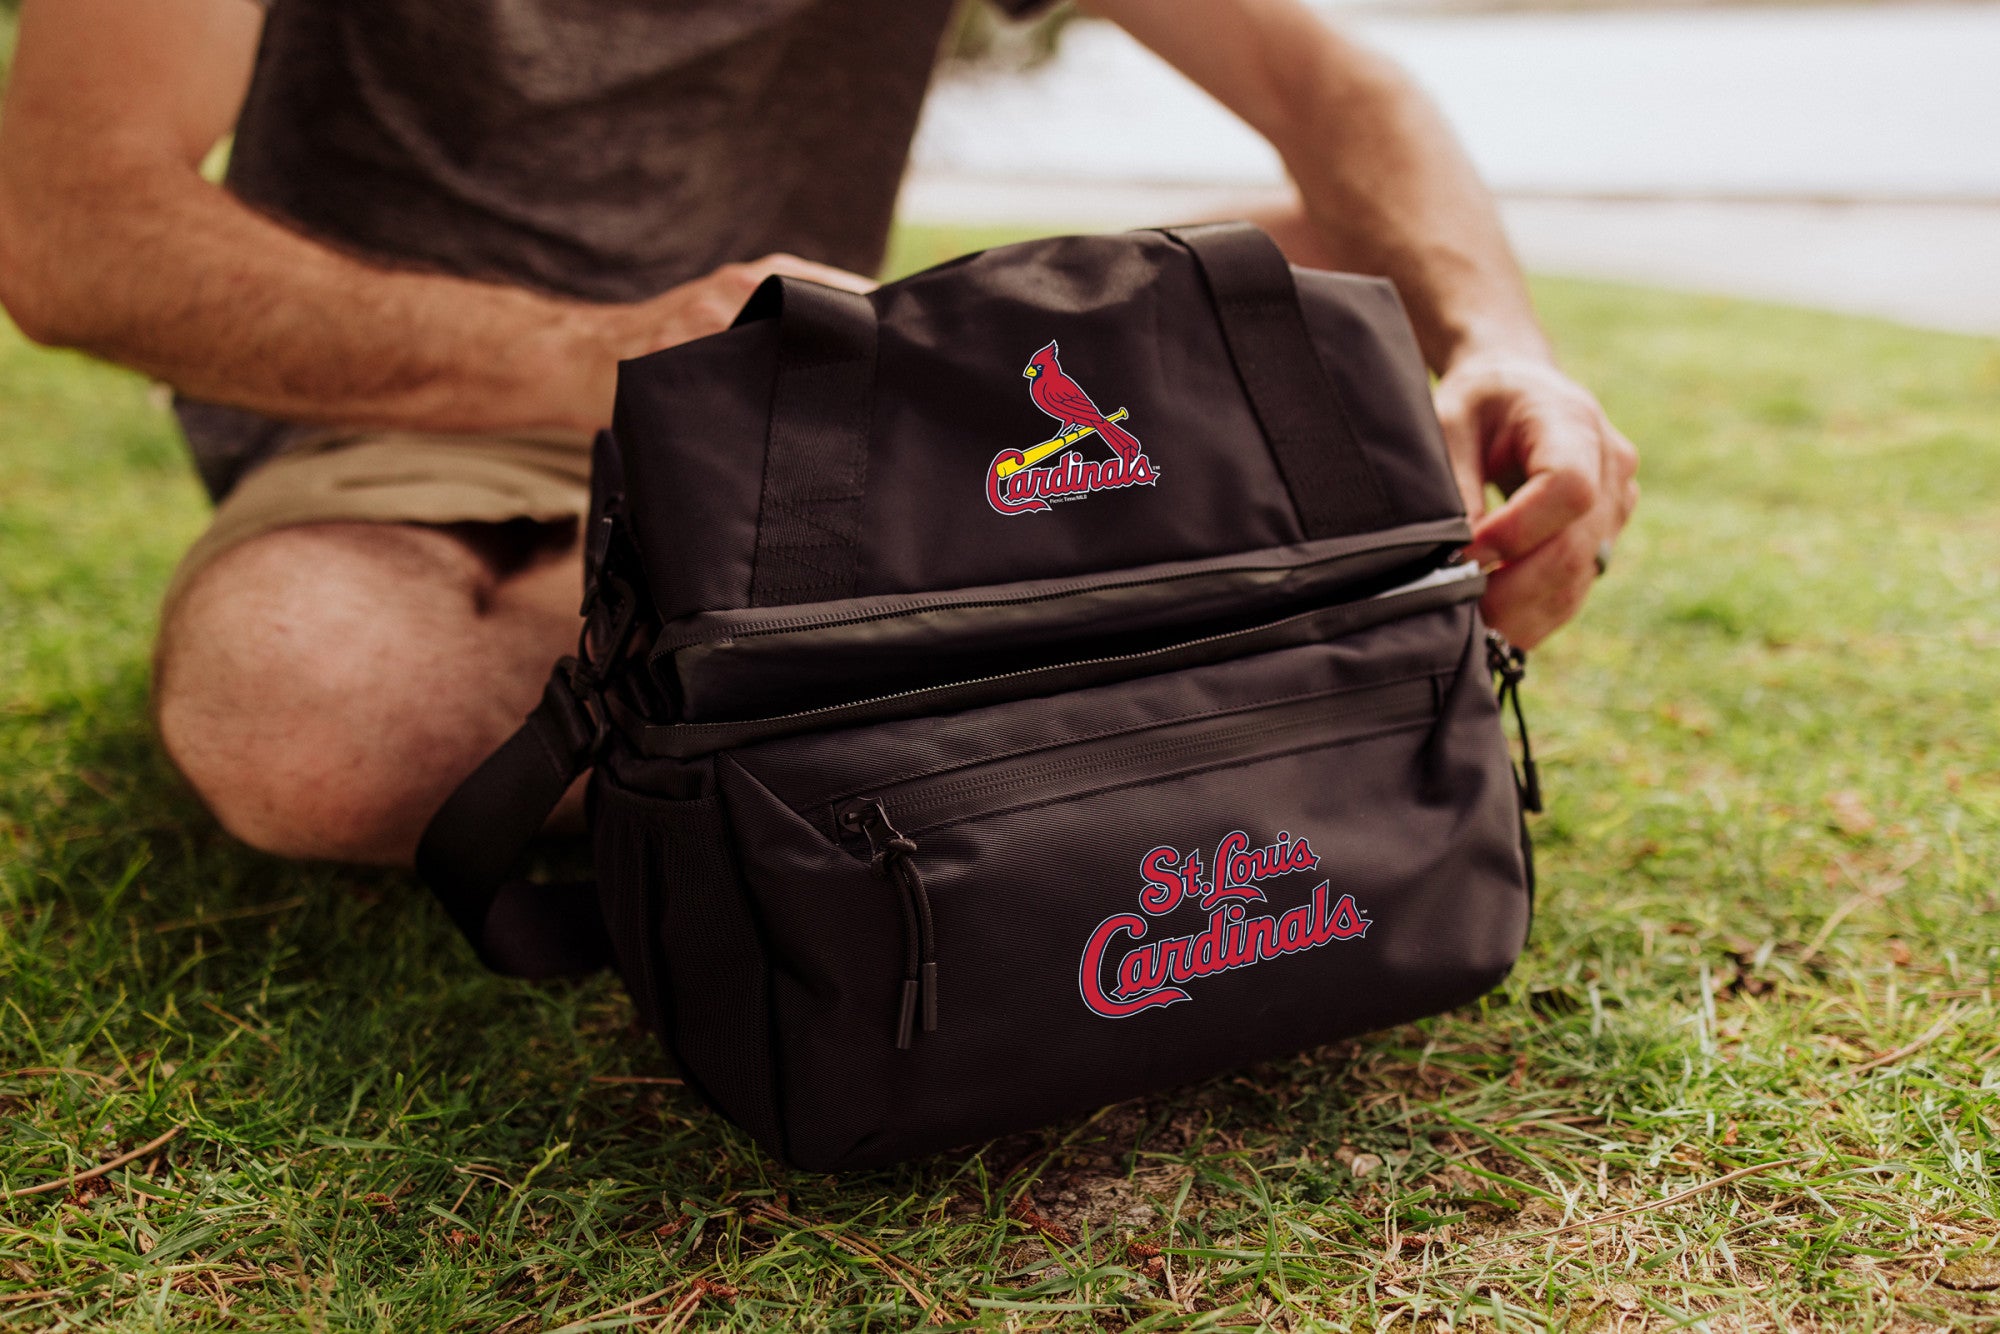 St. Louis Cardinals - Tarana Lunch Bag Cooler with Utensils